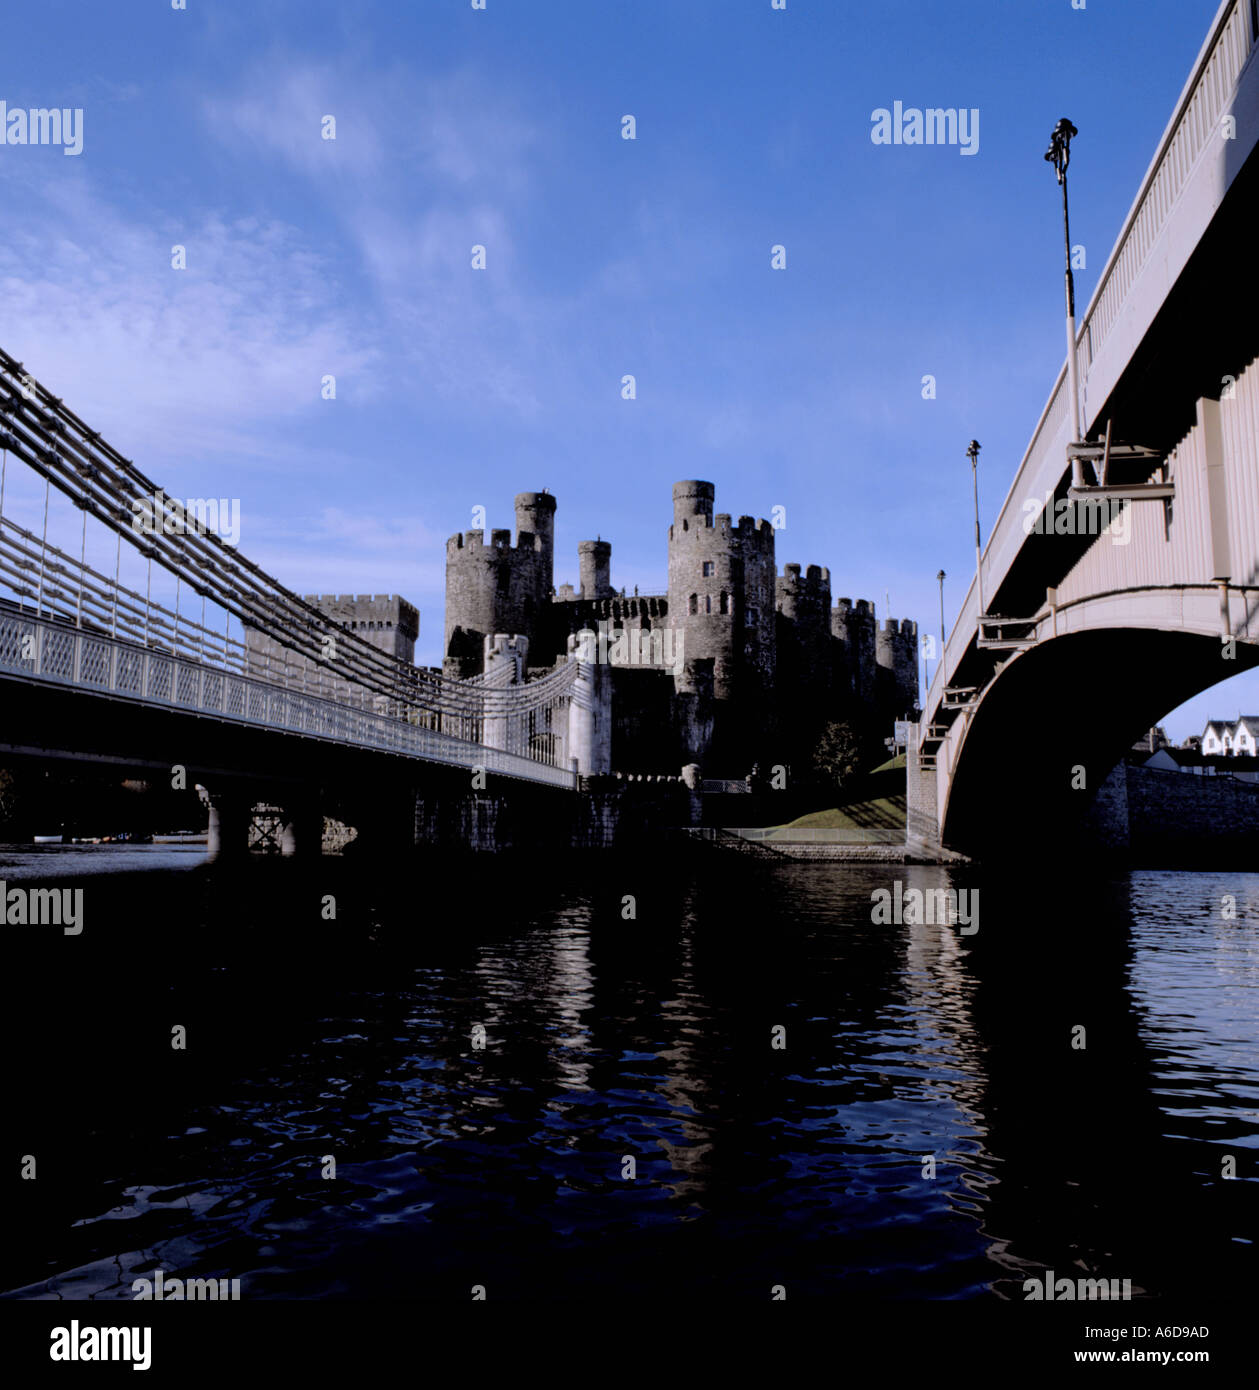 Château de Conwy, et vieux (suspension) et nouveau [arch] section en acier ponts routiers sur la rivière Conwy, Conwy, Gwynedd, Pays de Galles, Royaume-Uni Banque D'Images